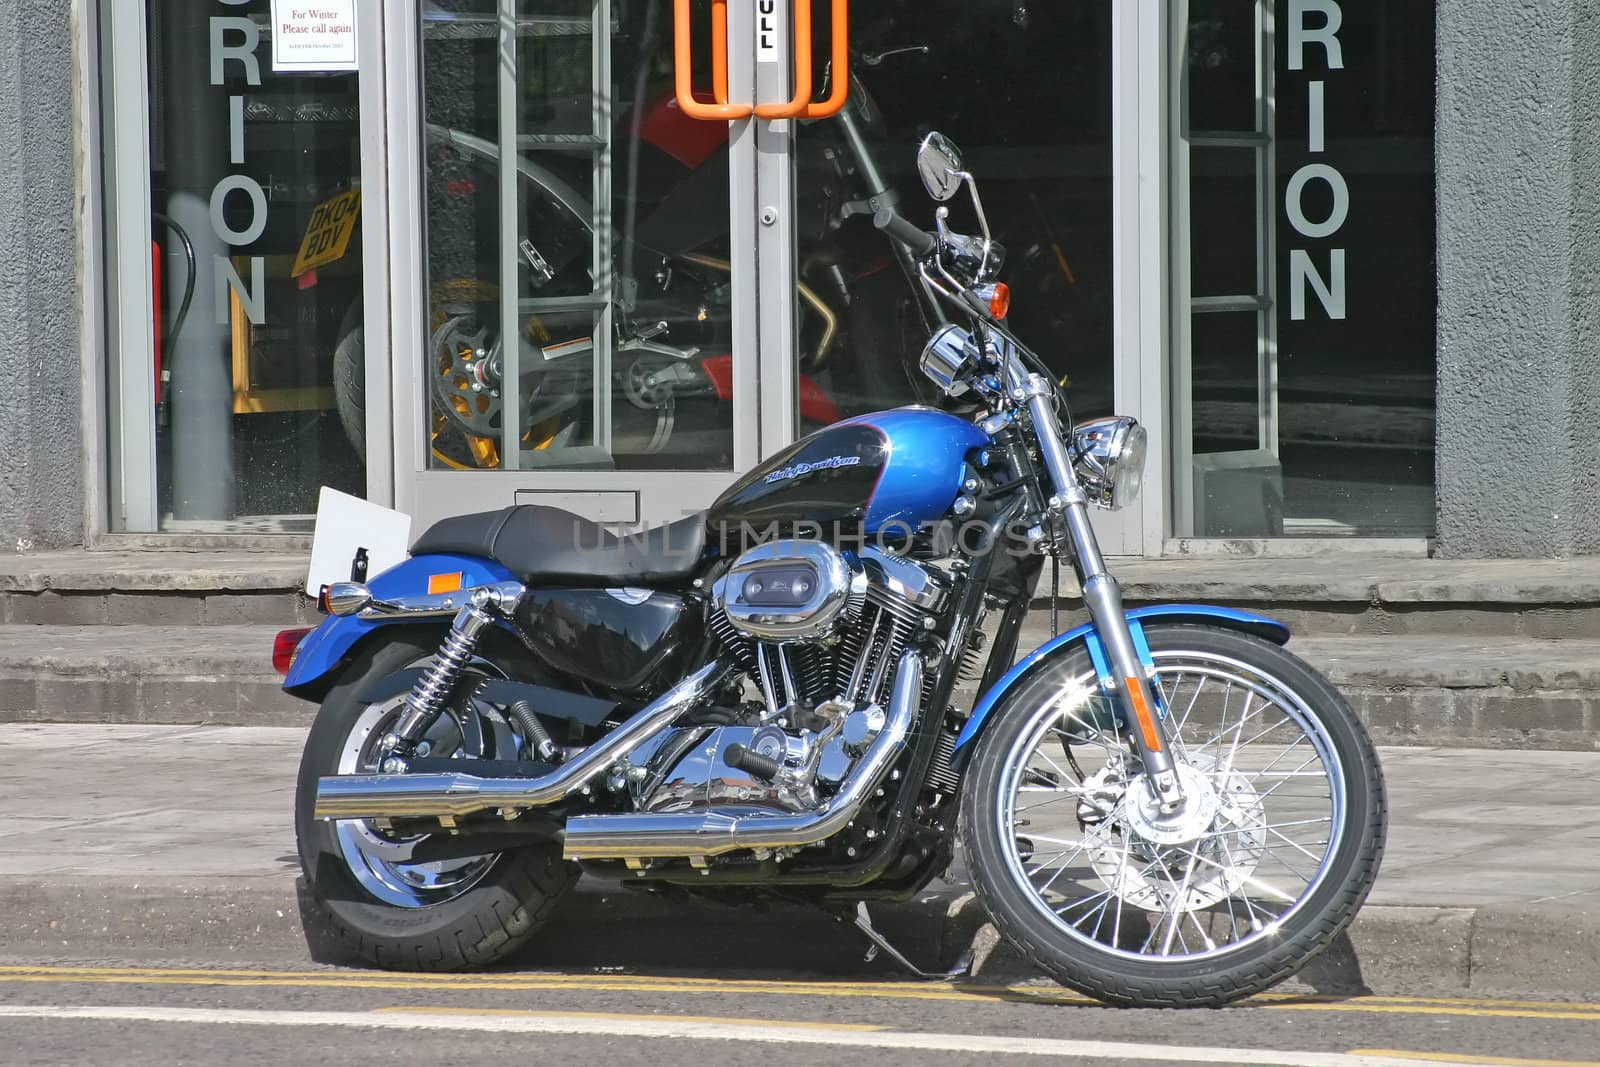 Blue and Black Harley Davidson Motor Bike Parked